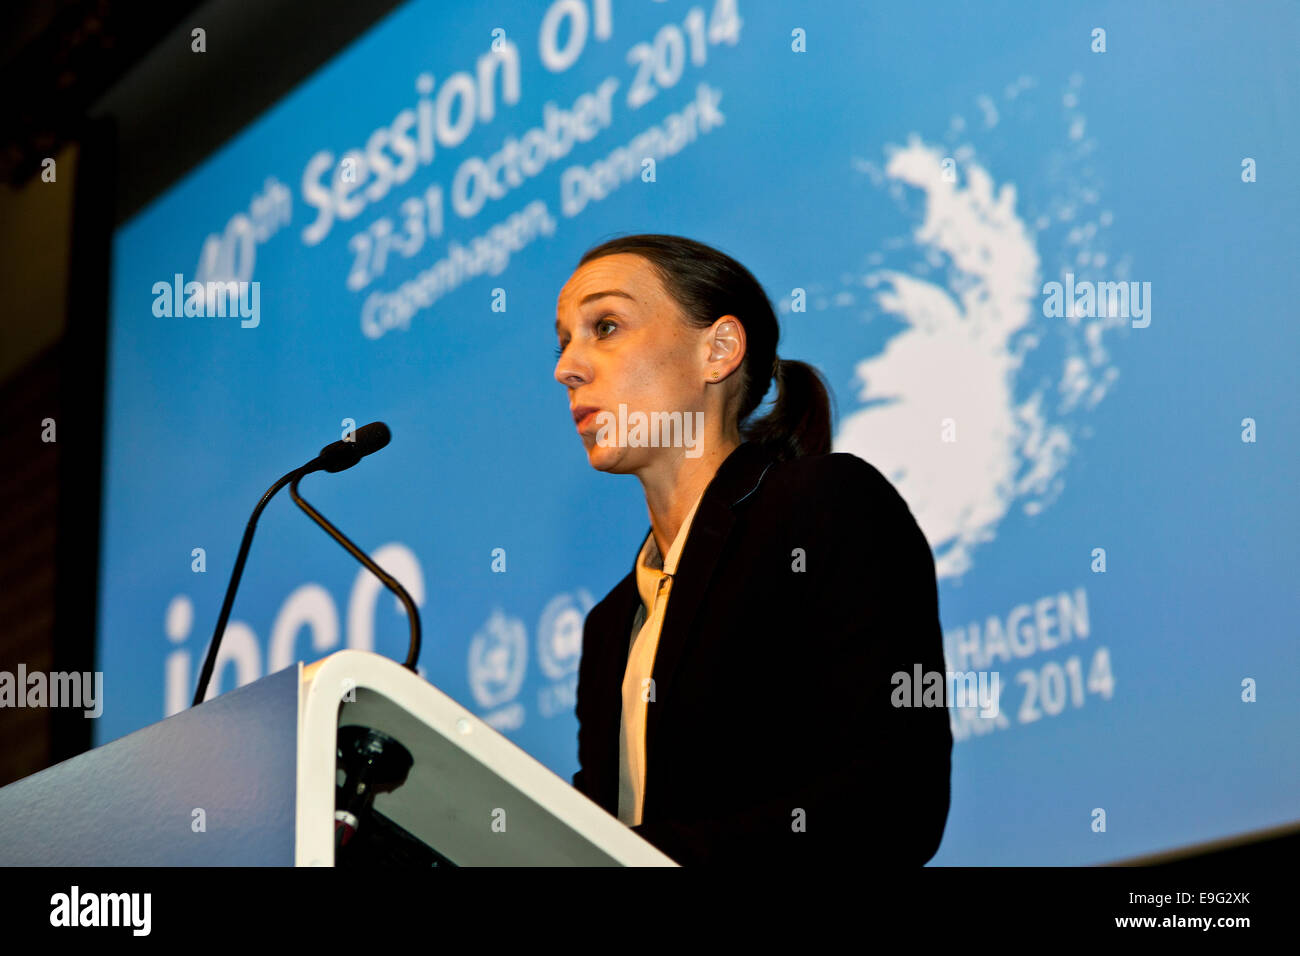 Copenhagen, Danimarca. 27 ottobre, 2014. Il Ministro danese dell'energia, Kirsten Brosbøl, indirizzo dell'ONU sul clima - pannello IPCC - i delegati durante la cerimonia di apertura di questo lunedì in Copenhagen. Credito: OJPHOTOS/Alamy Live News Foto Stock